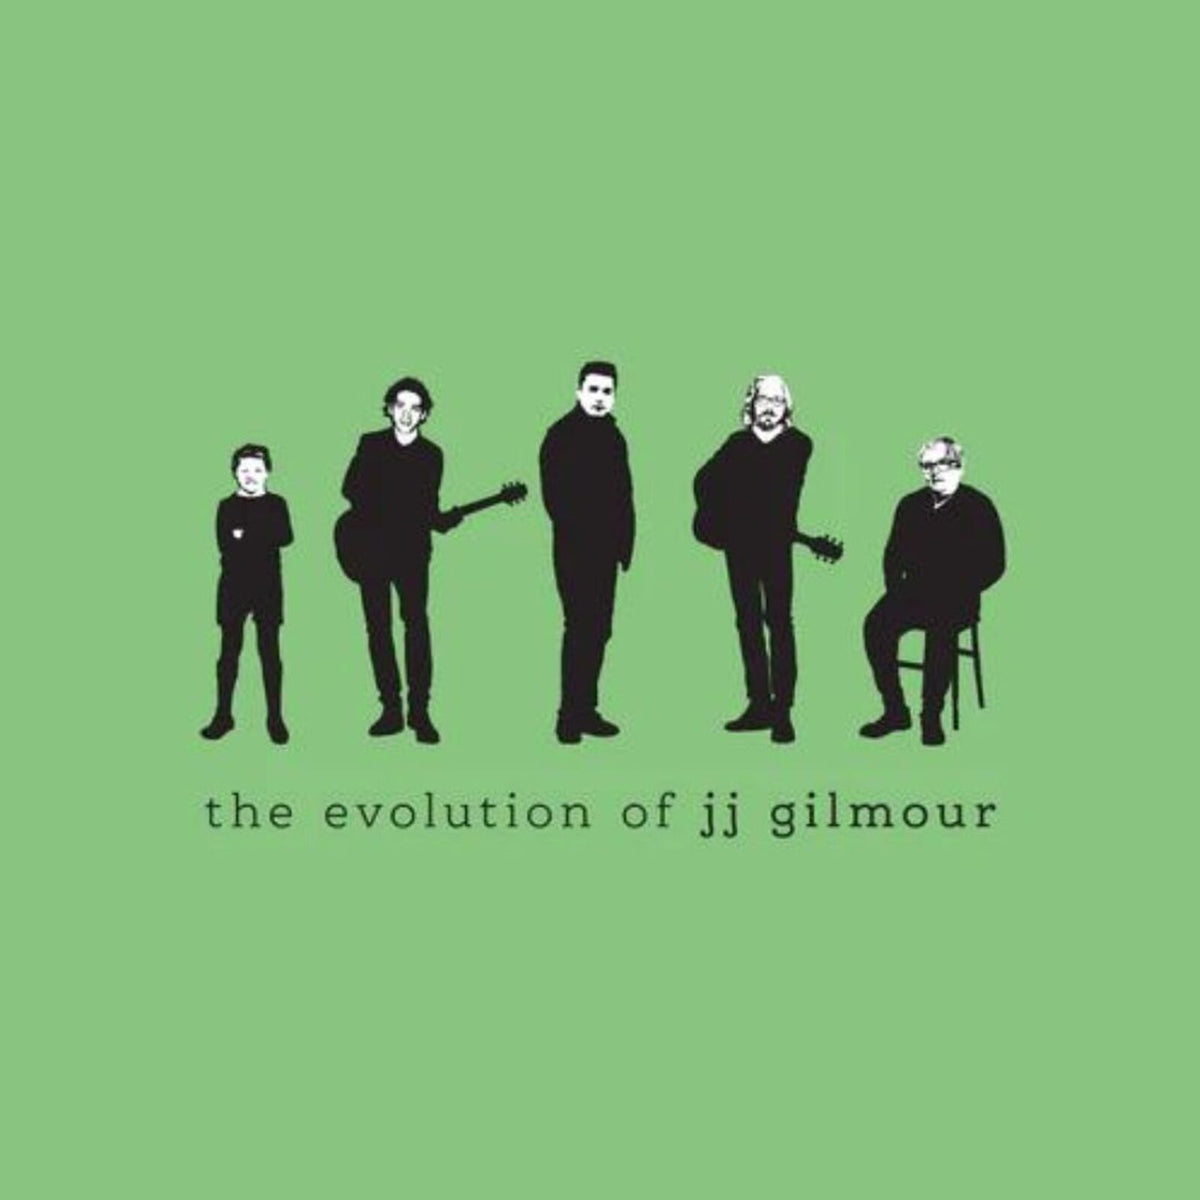 JJ Gilmour - The Evolution Of JJ Gilmour - PNFG43